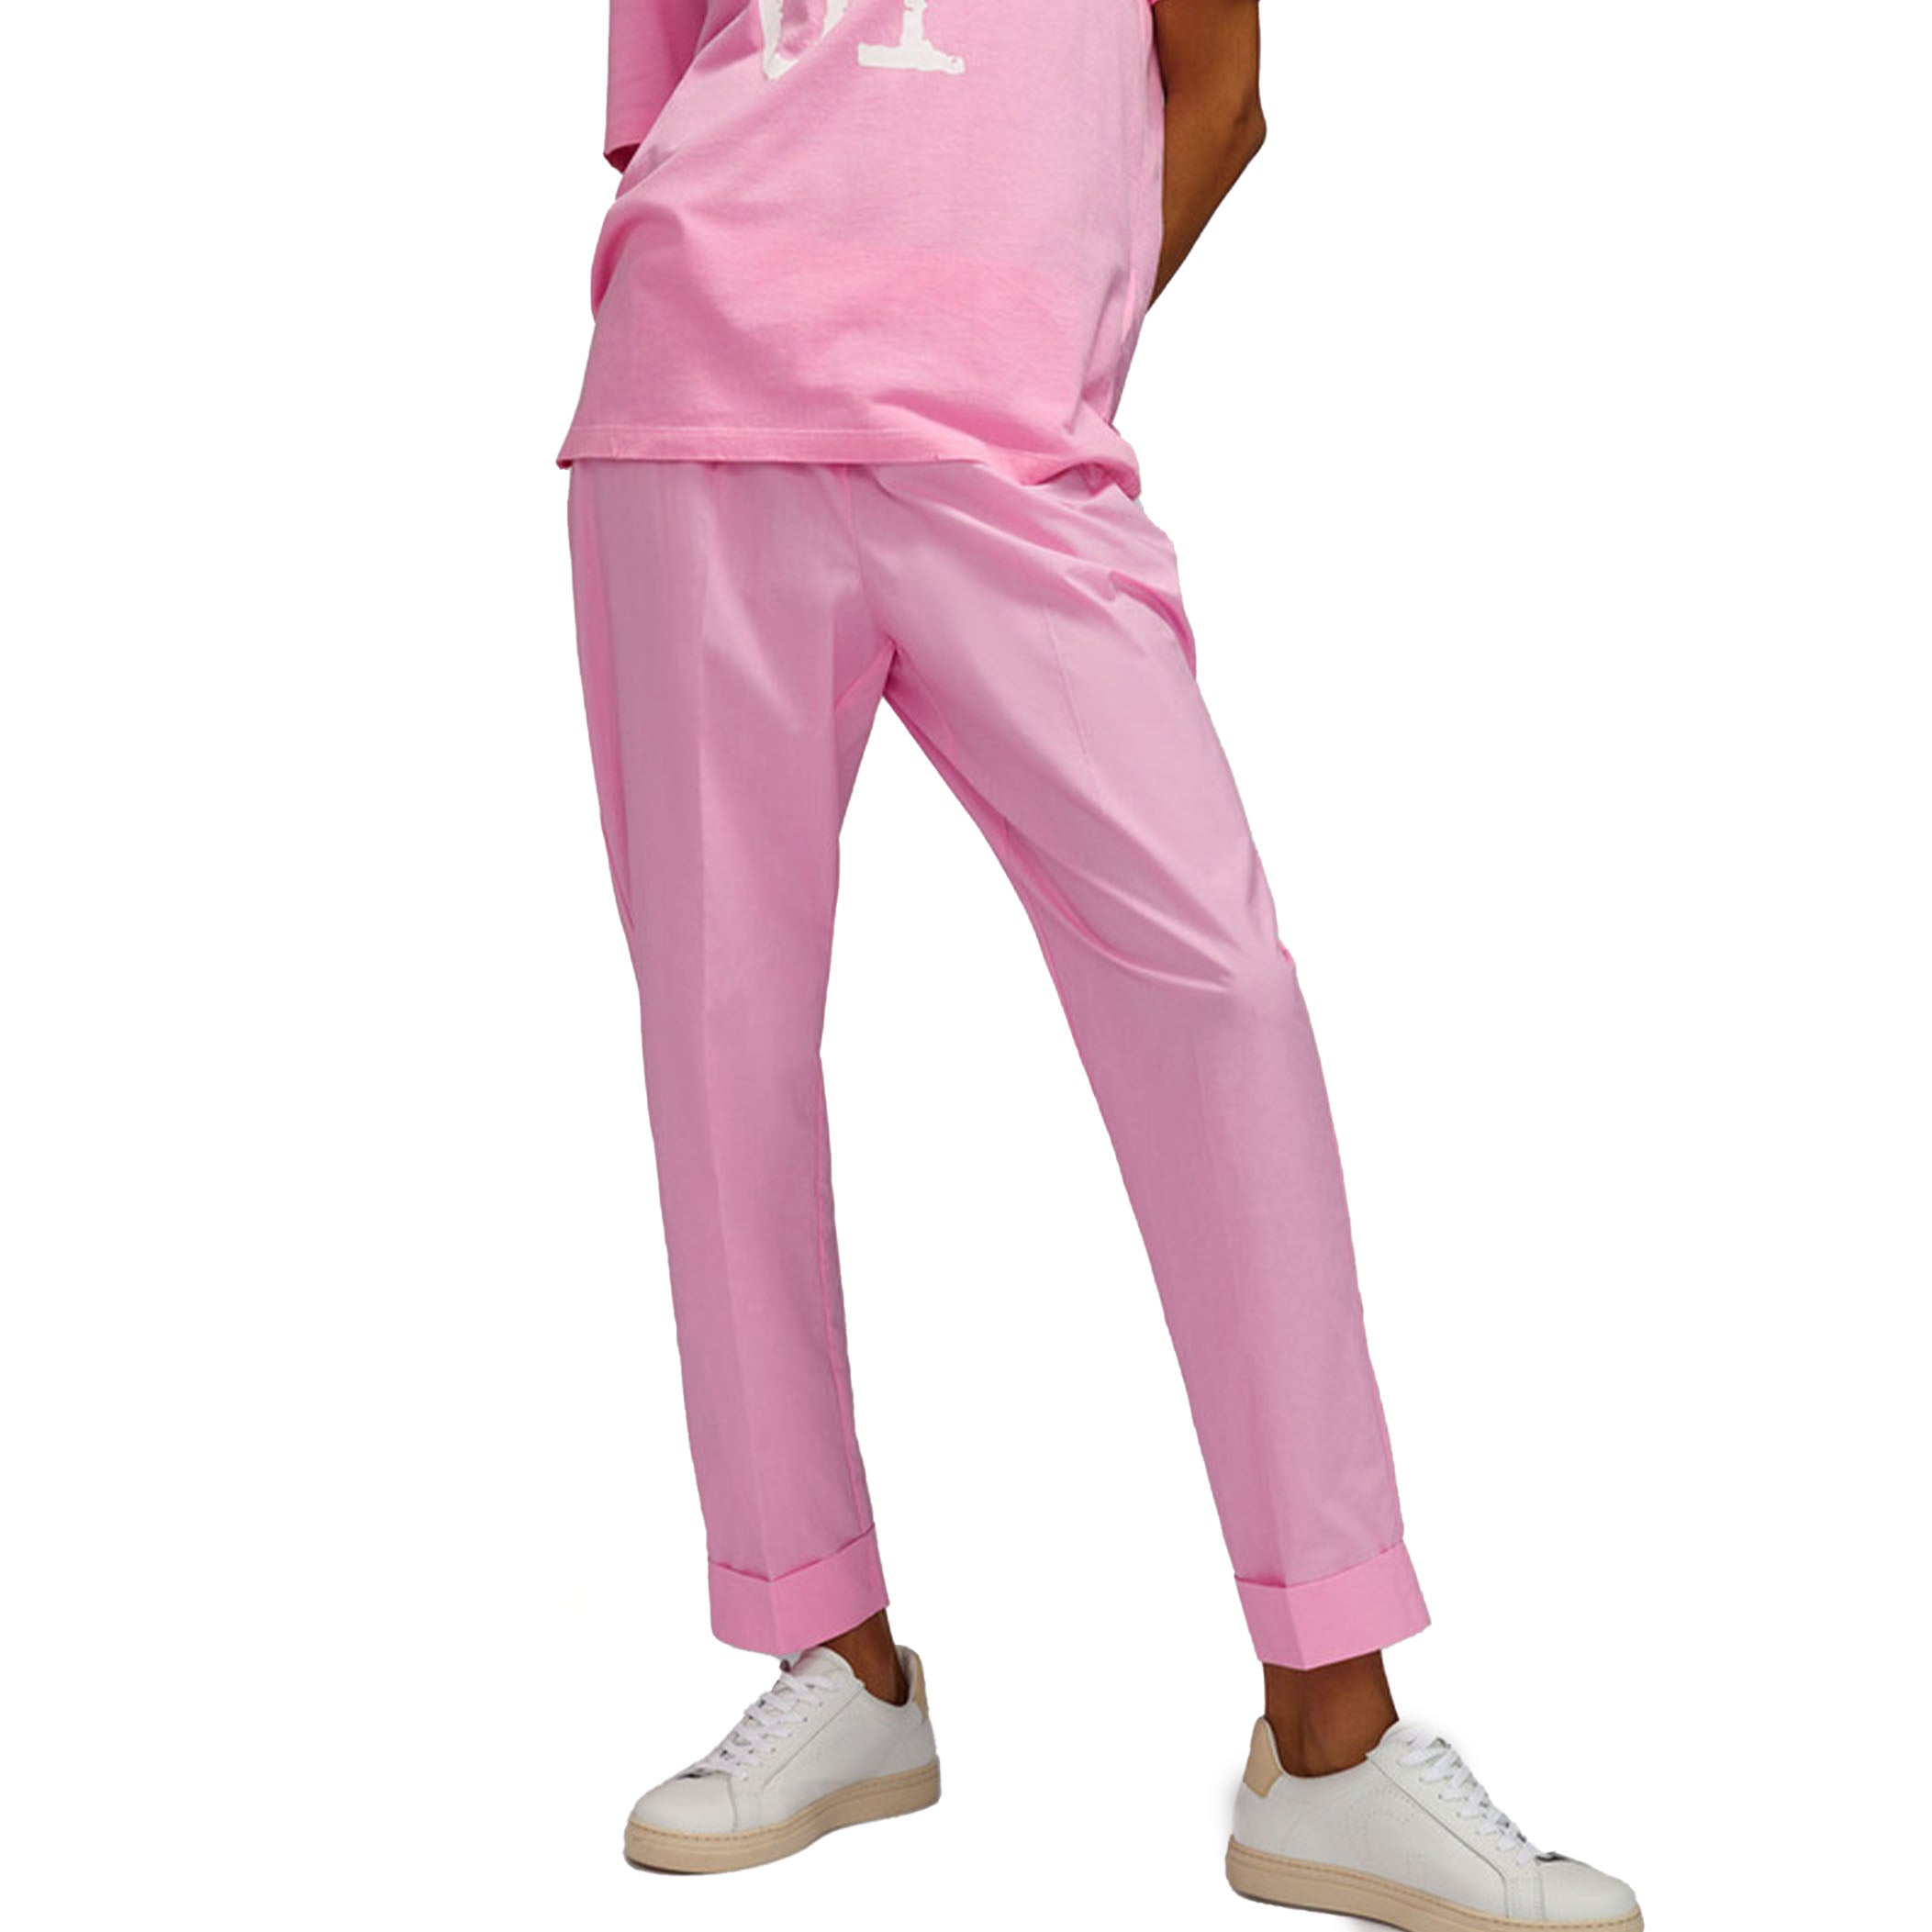 Pantalone in popeline con risvolto rosa confetto